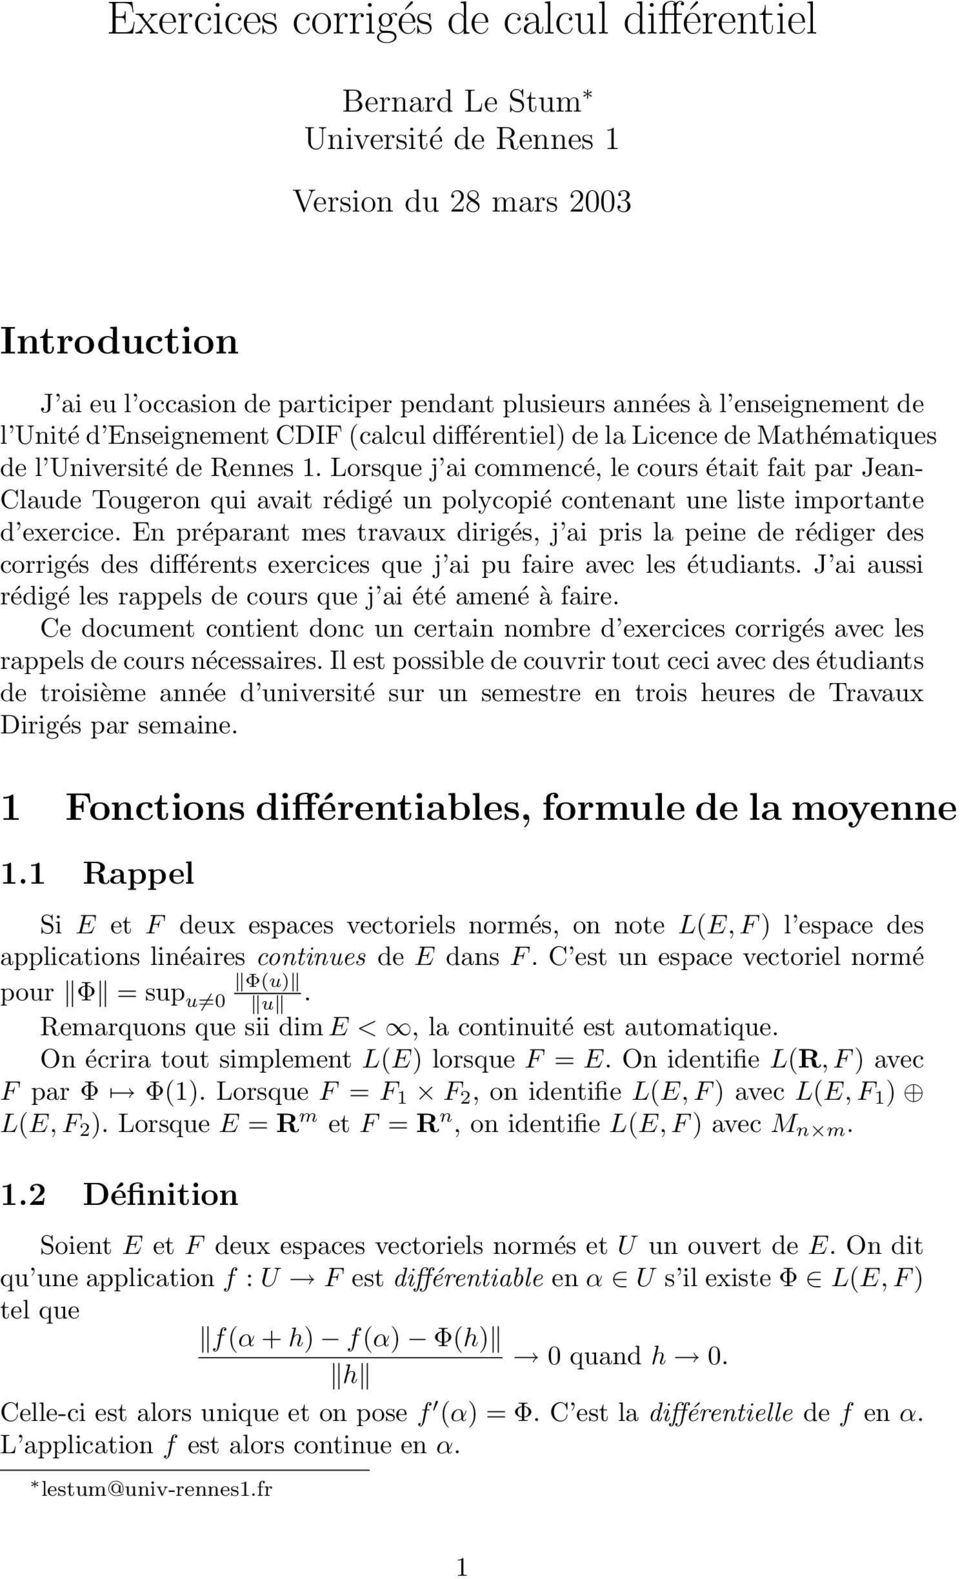 Exercices corrigés de calcul différentiel - PDF Free Download